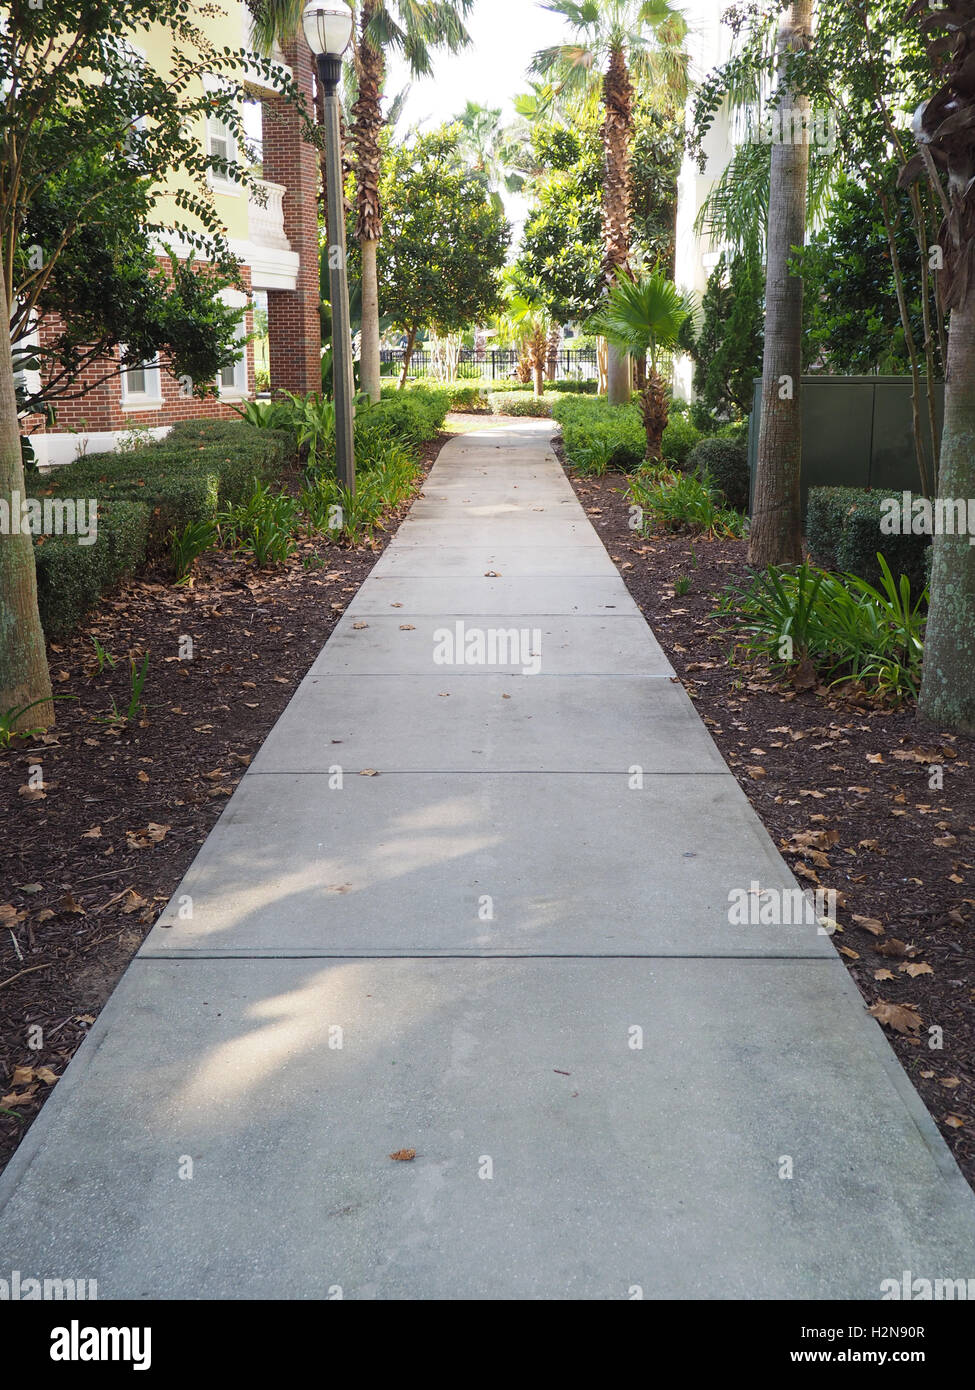 Long trottoir en béton qui est partiellement ombragée. Le trottoir est bordée d'arbres et est entre deux bâtiments. Banque D'Images